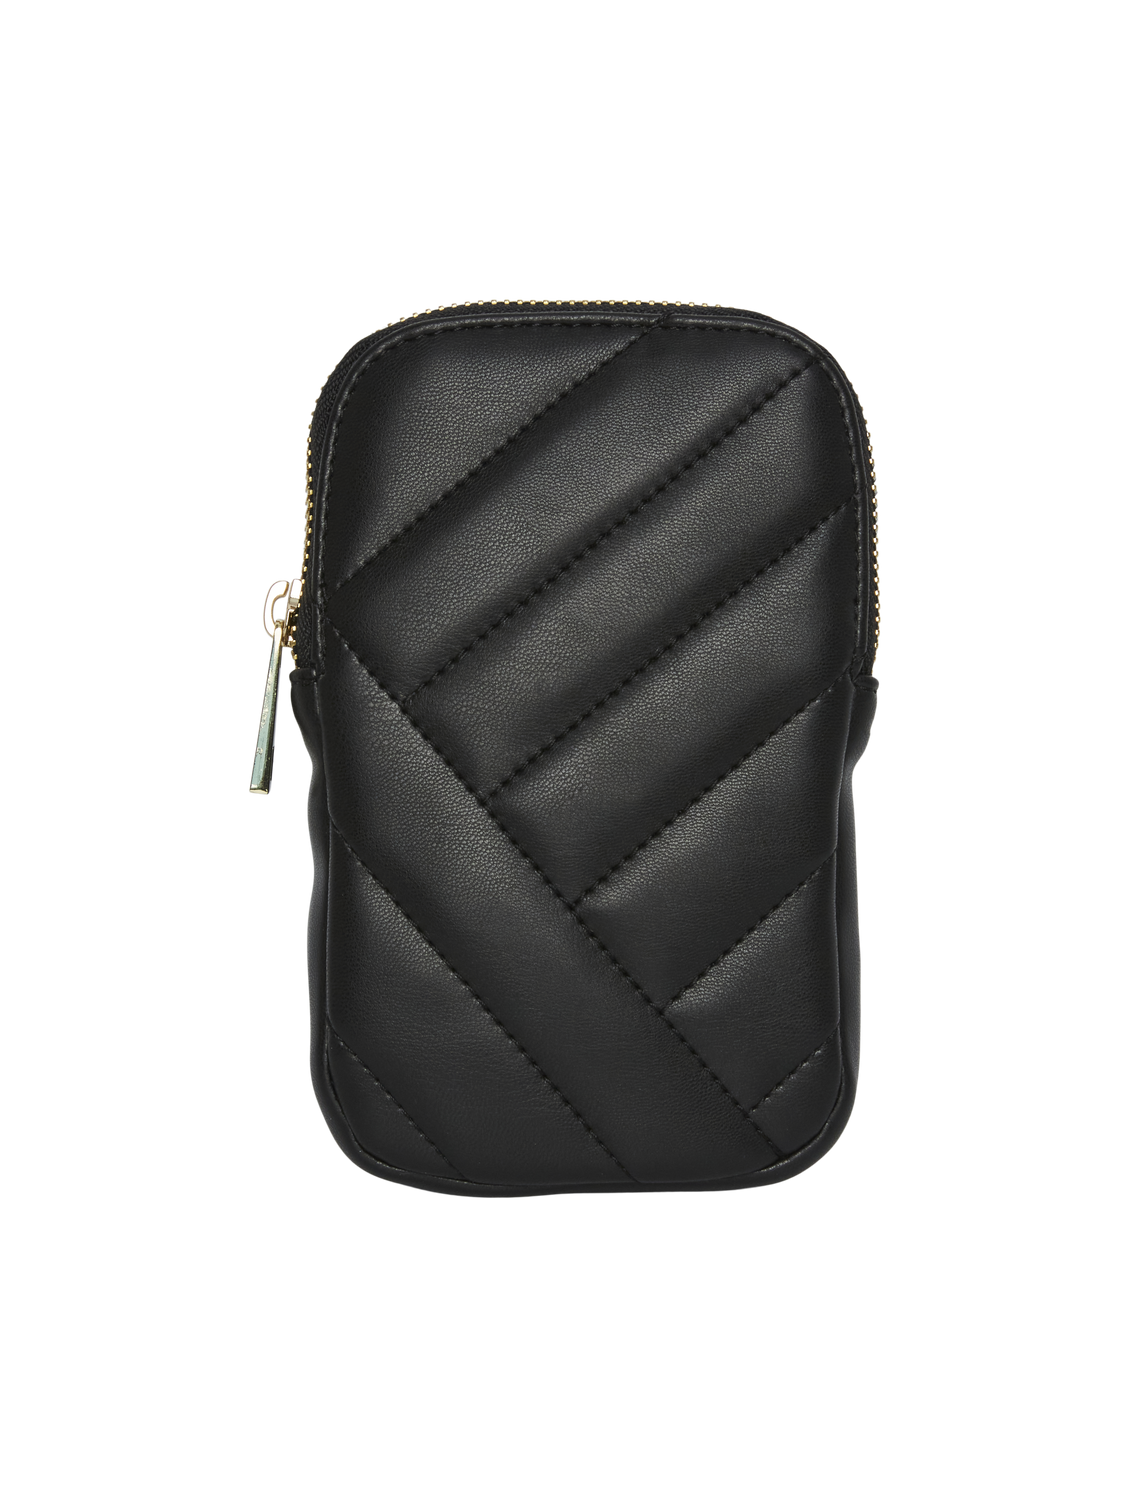 PCFINNA Handbag - Black